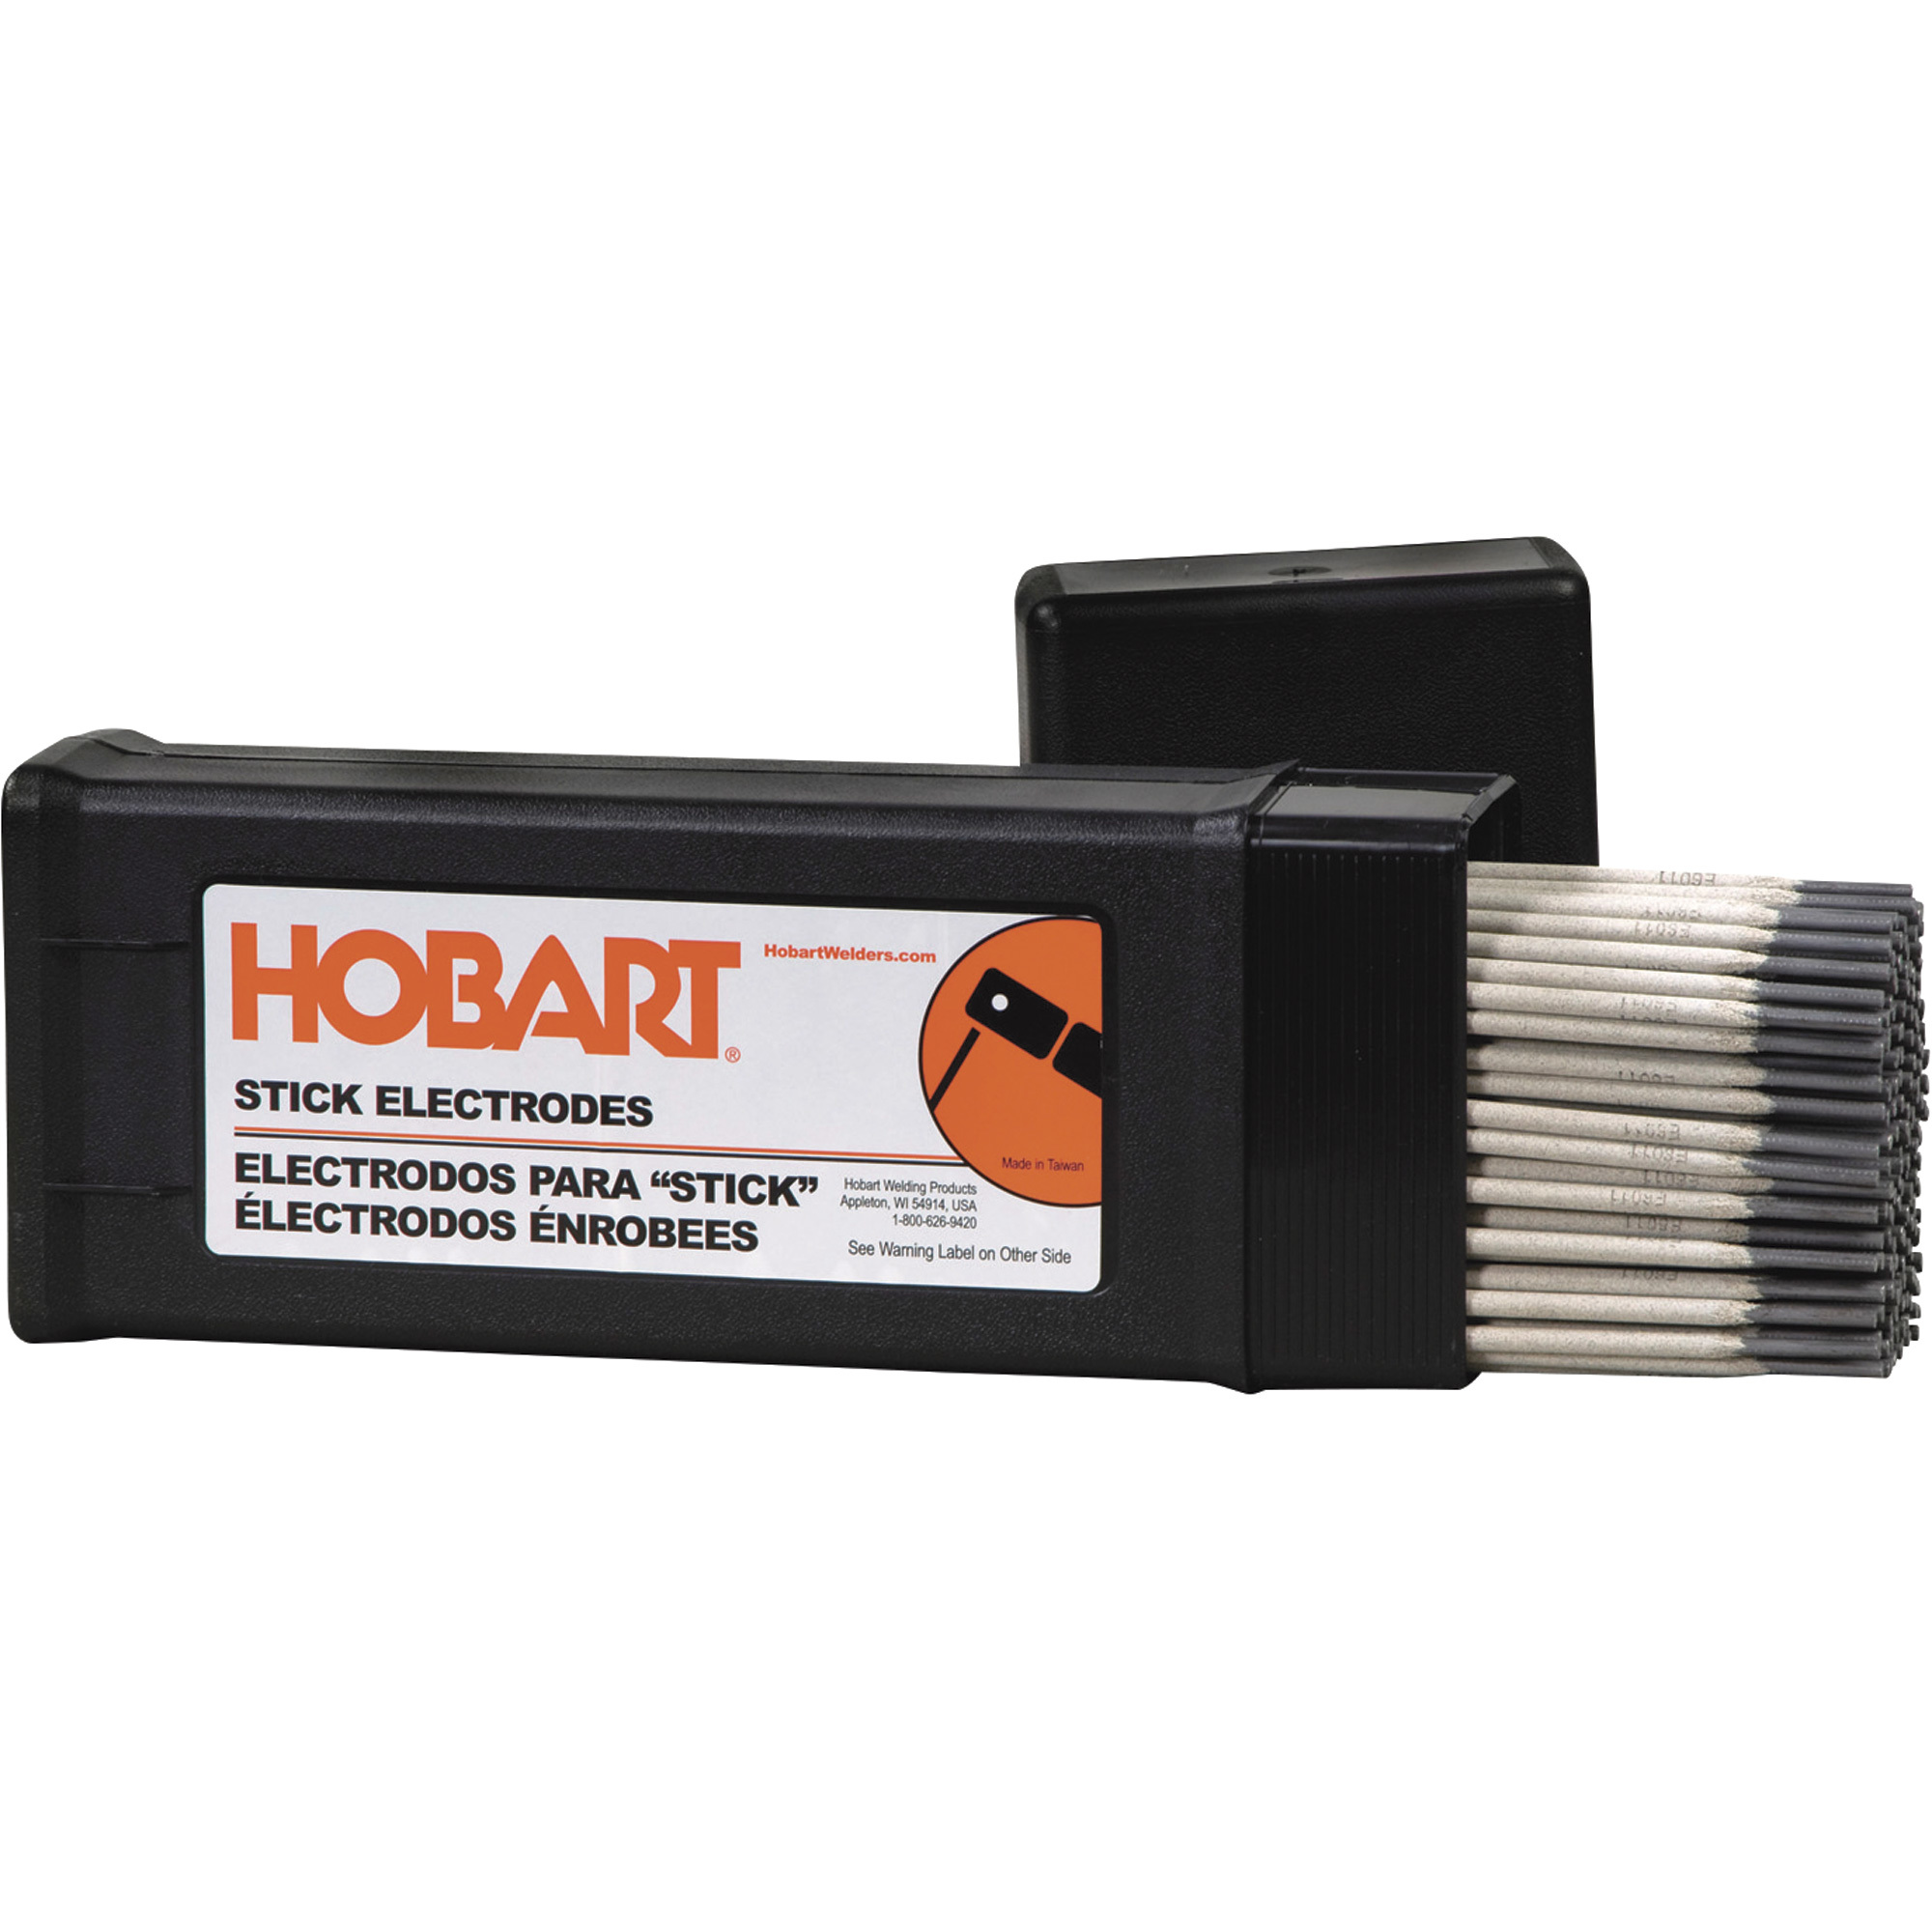 Hobart Filler Metals Stick Welding Electrodes â 6011, 1/8Inch x 14Inch L, 10-Lb. Container, Model 770460